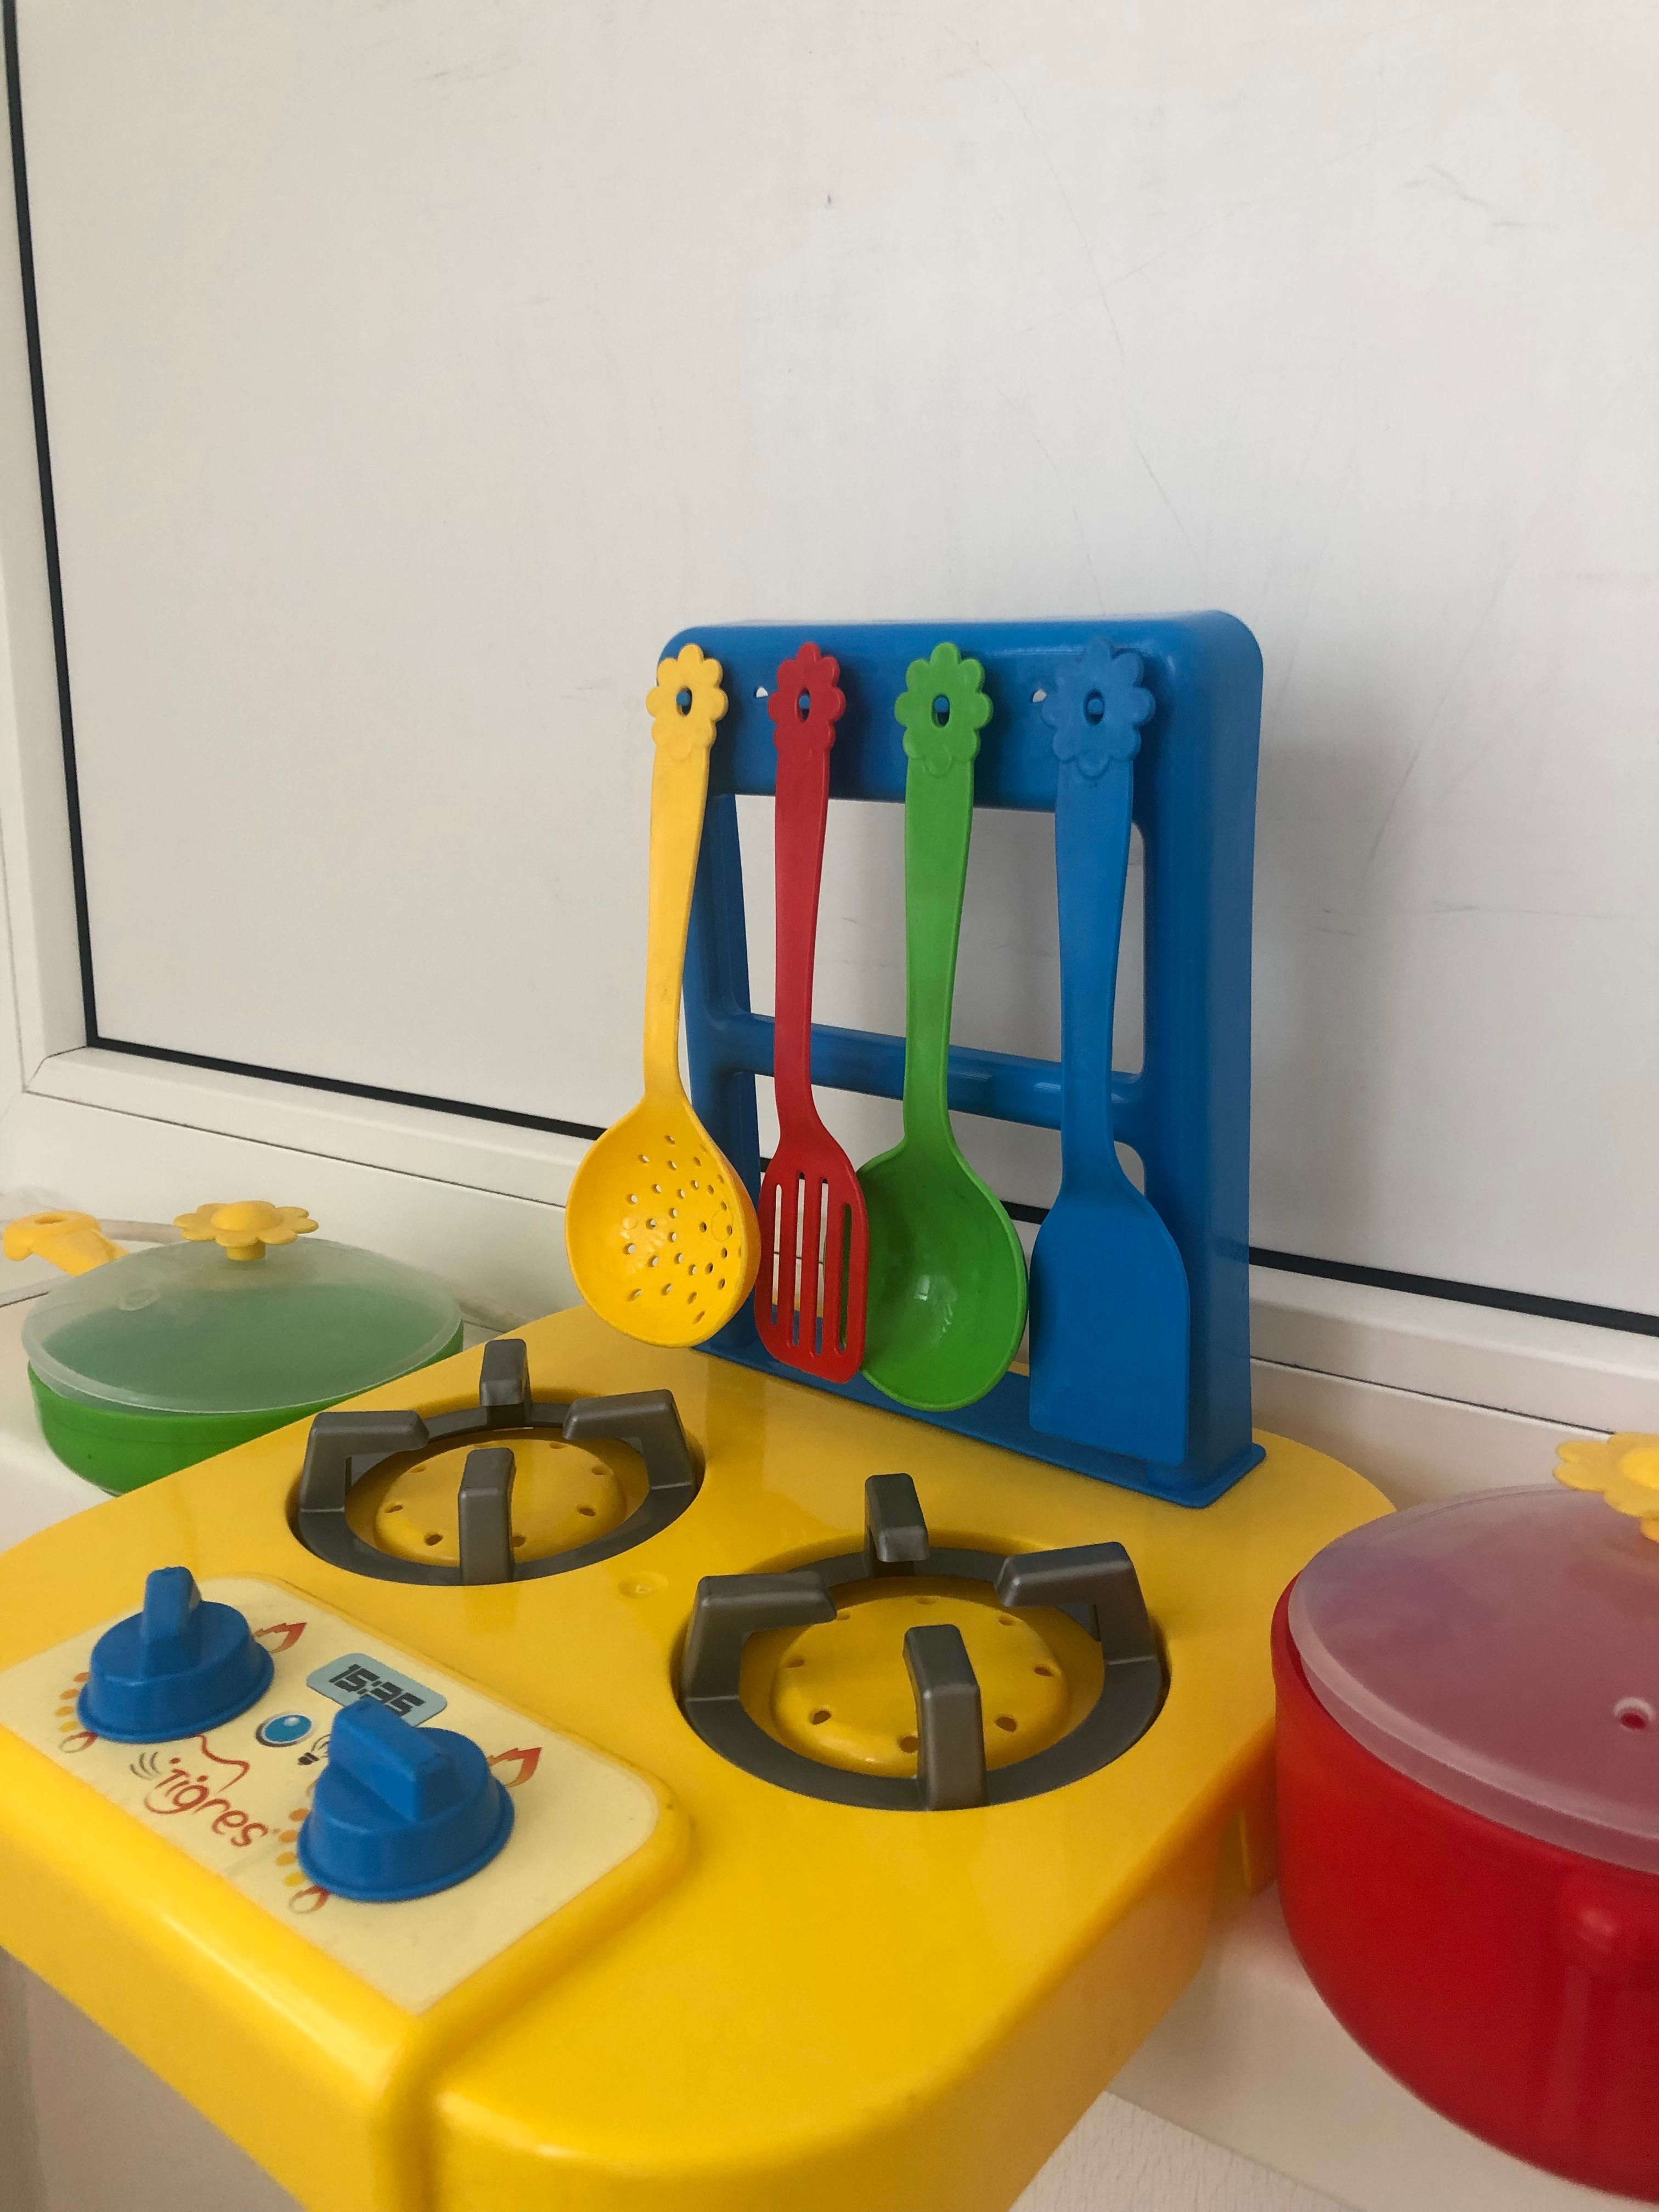 Кухня іграшкова з кухонним приладдям